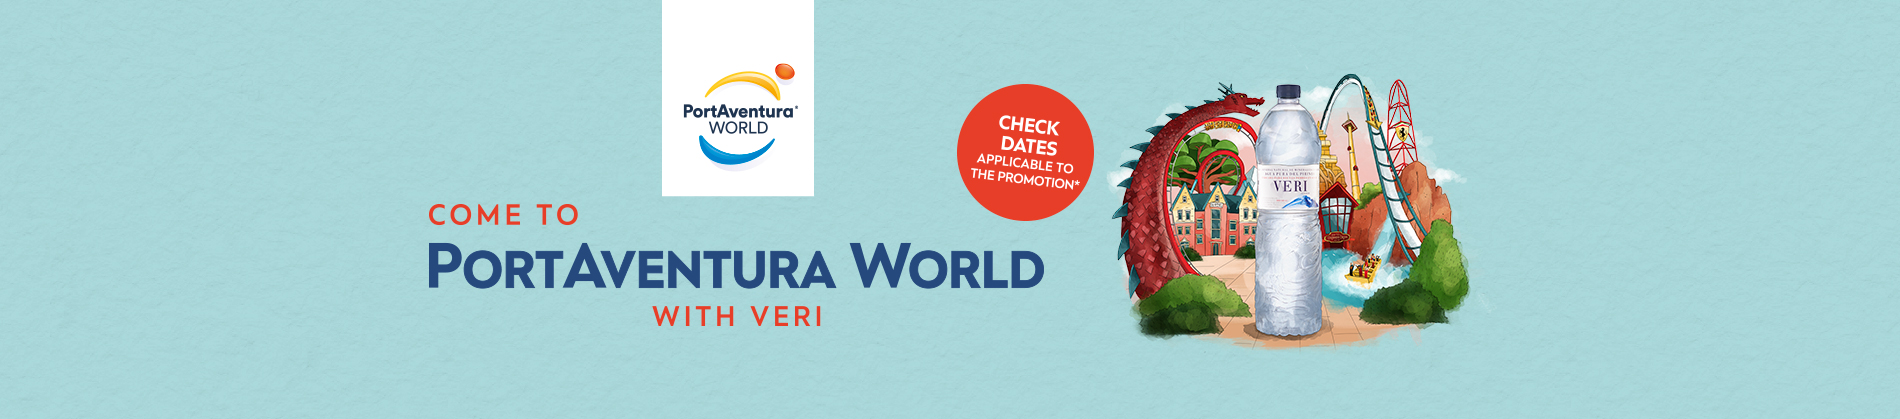 Come to PortAventura World with Veri